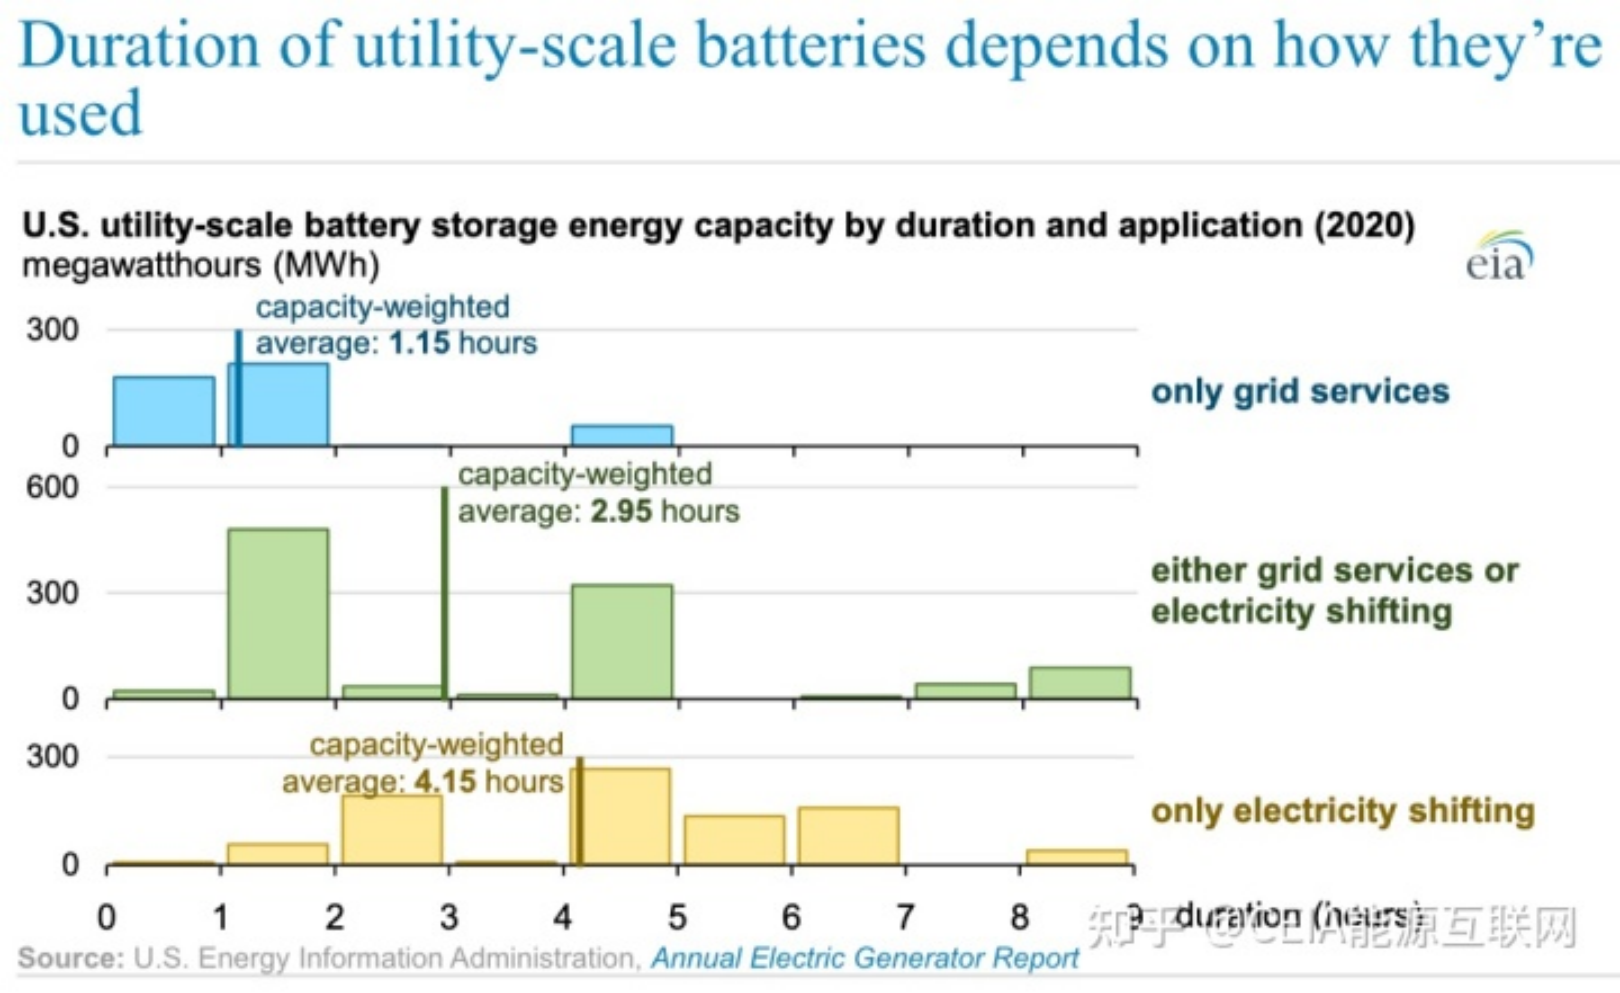 Quais são os usos das baterias de armazenamento de energia em escala de serviço público dos EUA?